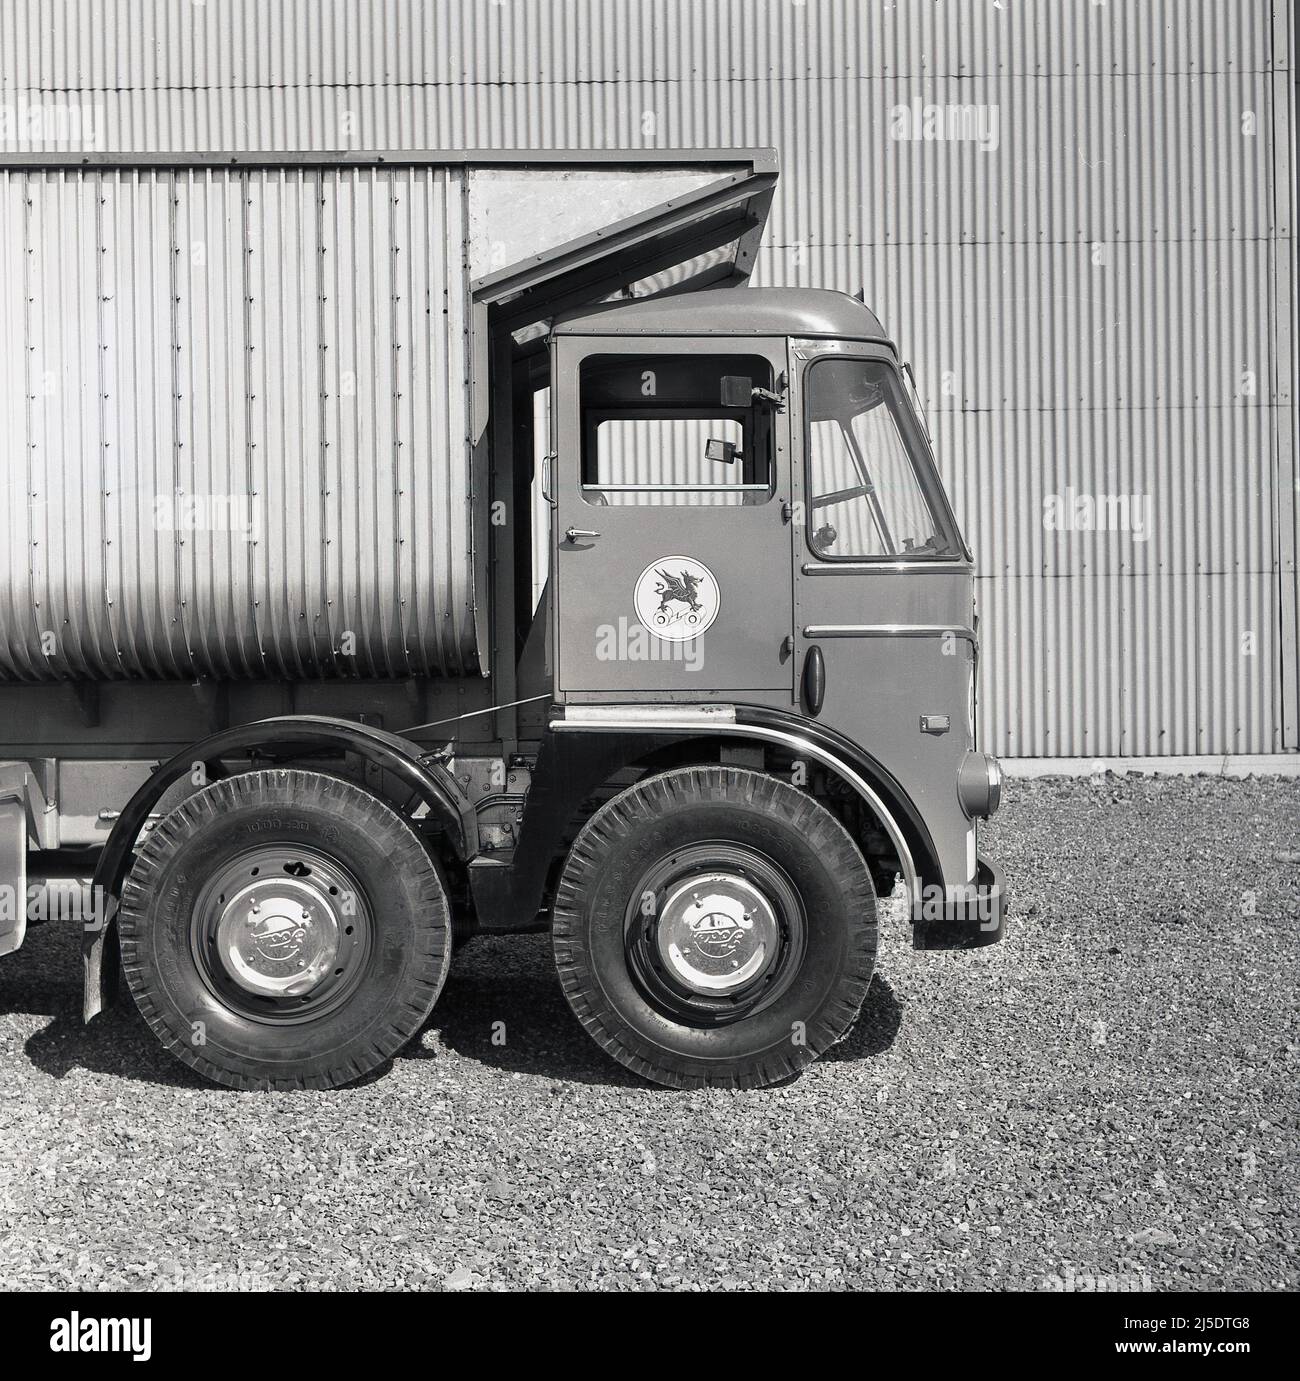 1950s, vue latérale historique de l'avant d'un camion de camion-benne ou d'un camion-tracteur de la compagnie d'acier du pays de Galles, Abbey Works, Port Talbot, pays de Galles, Royaume-Uni. Le logo de la société d'un dragon gallois fièrement debout sur deux rouleaux d'acier pressé est visible sur la porte de la cabine du conducteur. Les aciéries géantes construites sur les anciennes aciéries Margam, produisent toutes sortes d'acier et de fer, y compris des tôles laminées à chaud et à froid et des bobines pour carrosseries automatiques et d'autres types d'acier à utiliser dans l'industrie et les chemins de fer. Banque D'Images